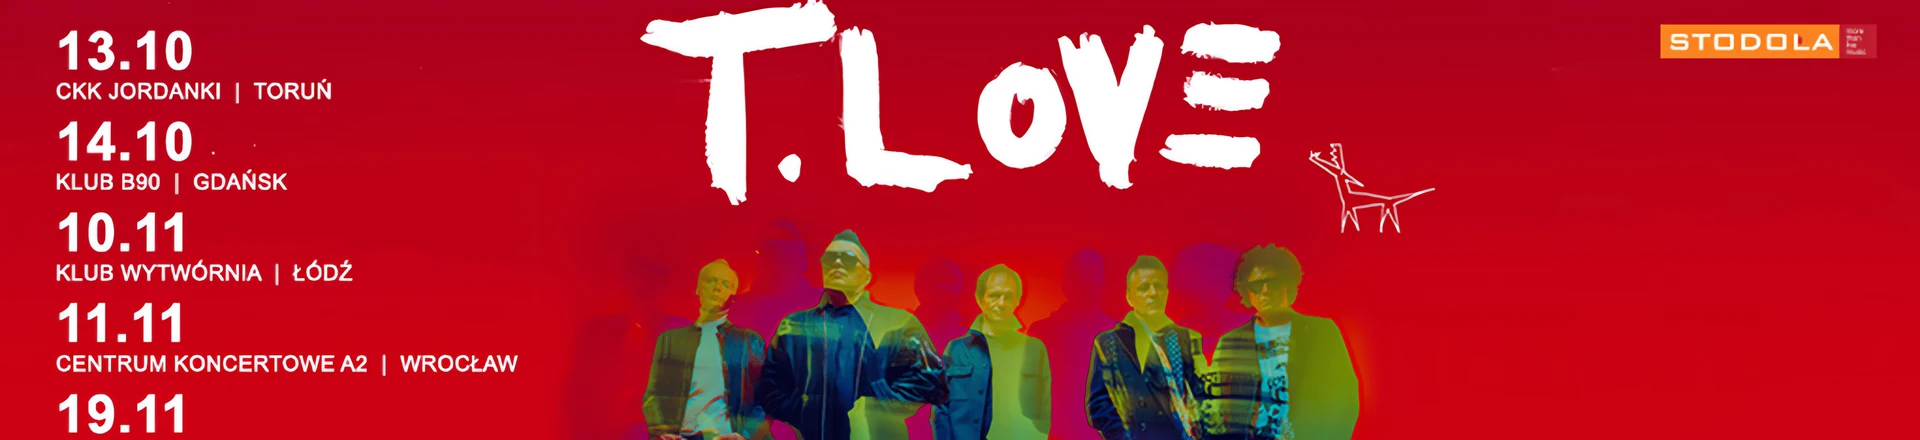 Nie przegap: 6 koncertów T.Love w ramach trasy "Hau! Hau!" 